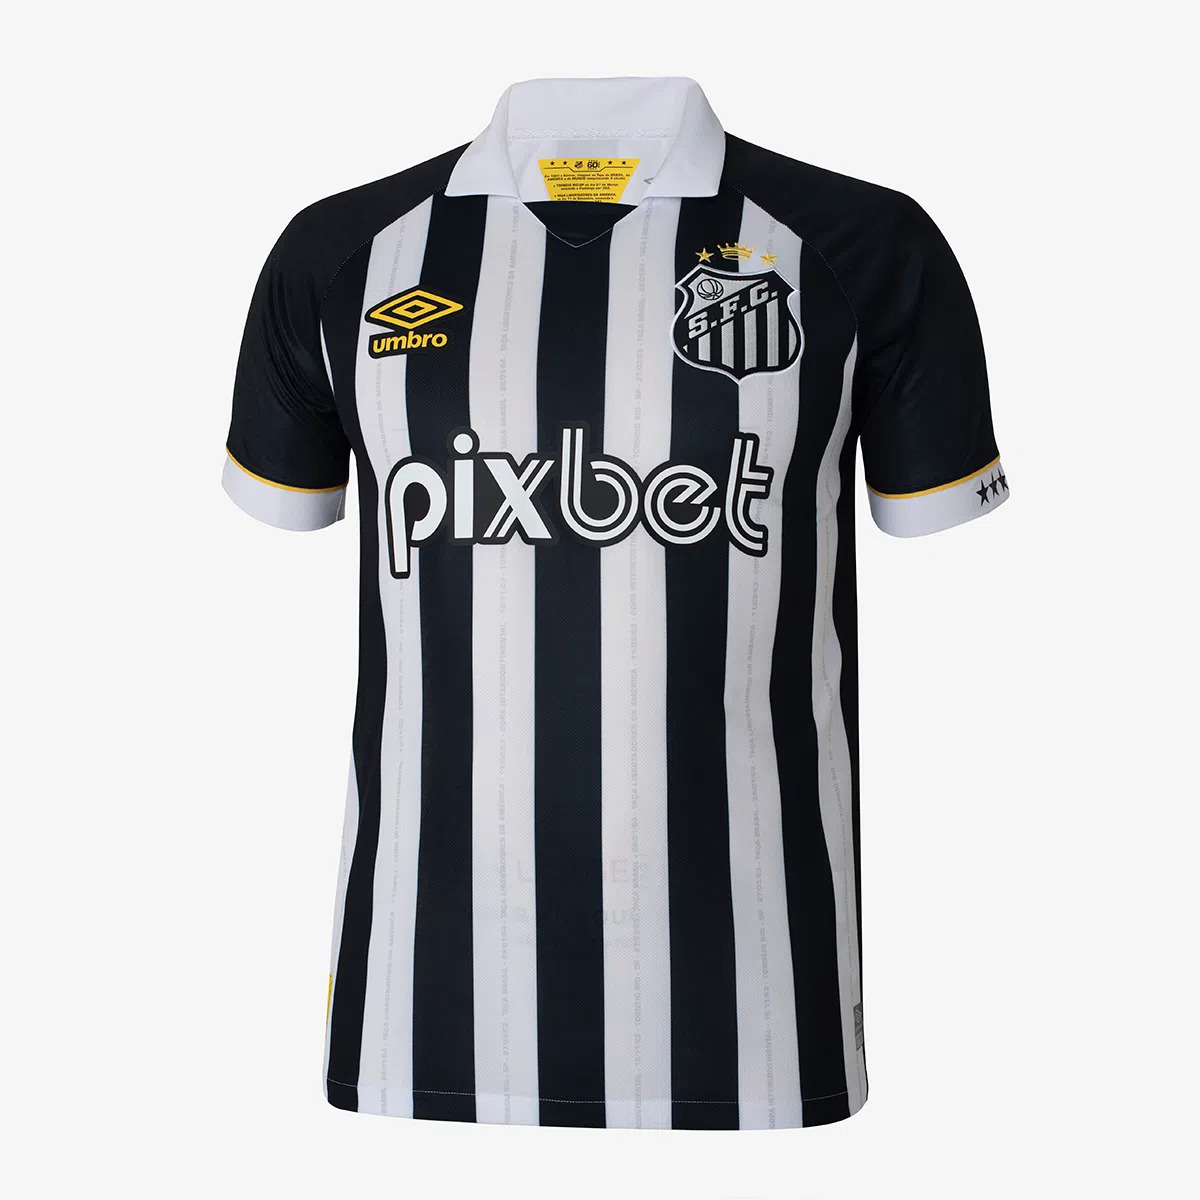 Expressão Autêntica: Adquira Sua Camiseta Original do Santos FC e Vista o Orgulho Alvinegro com Estilo!